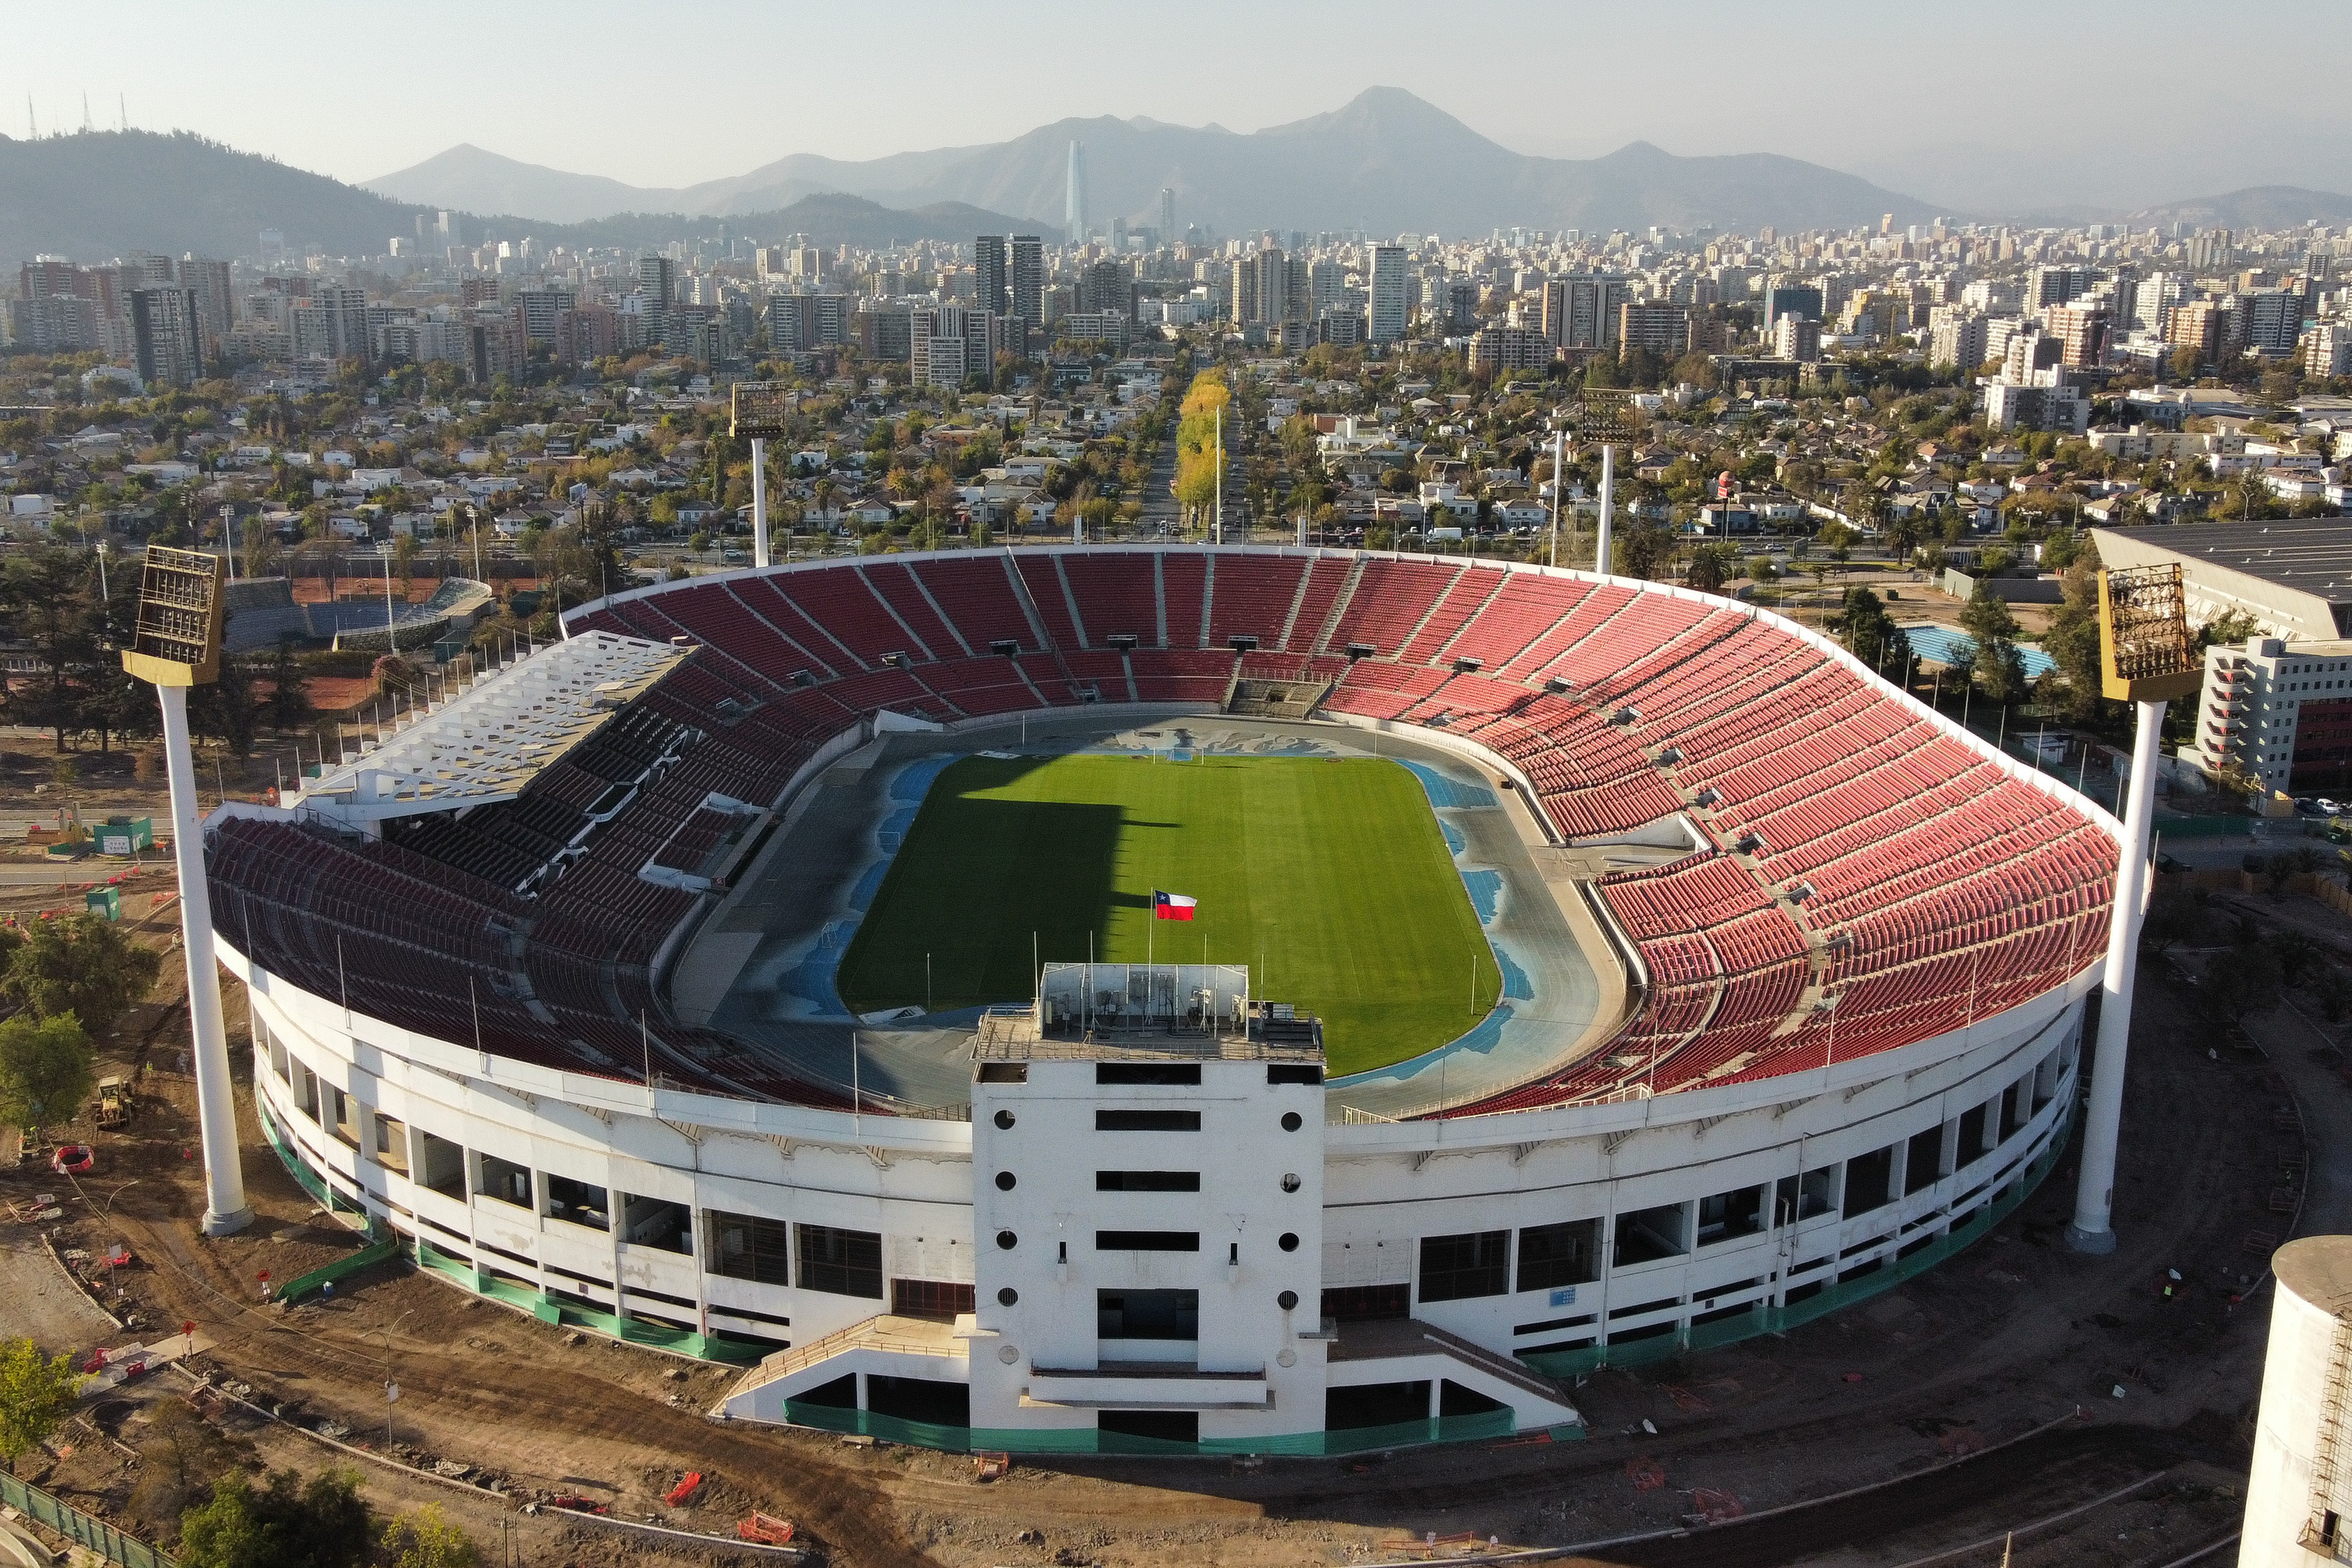 Tenemos nómina para los Juegos Panamericanos Santiago 2023 – Federacion de  Tenis de Chile